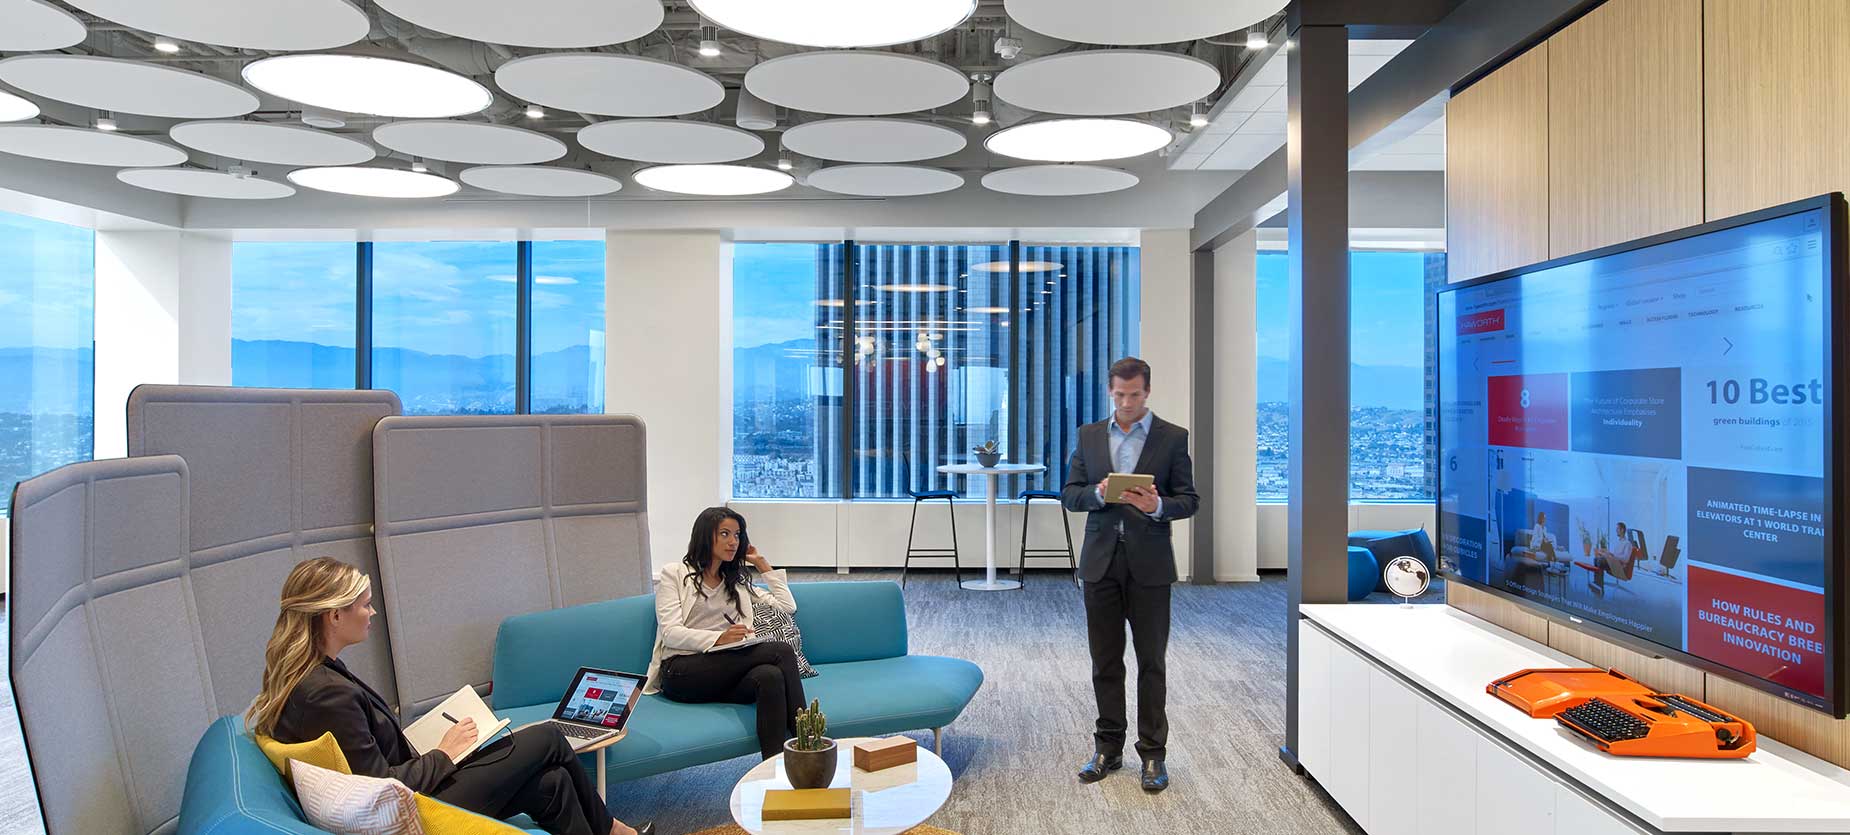 オープンなオフィス環境に配置されたカジュアルなミーティングスペースは、オフィスやミーティングの活性化に大変役立ちます。テクノロジーを重視した軽量オフィス家具と隣接したオープンスペースで、様々なミーティングの規模や形式の必要に応じて椅子類を増やしたり減らしたりできる柔軟性が生まれます。